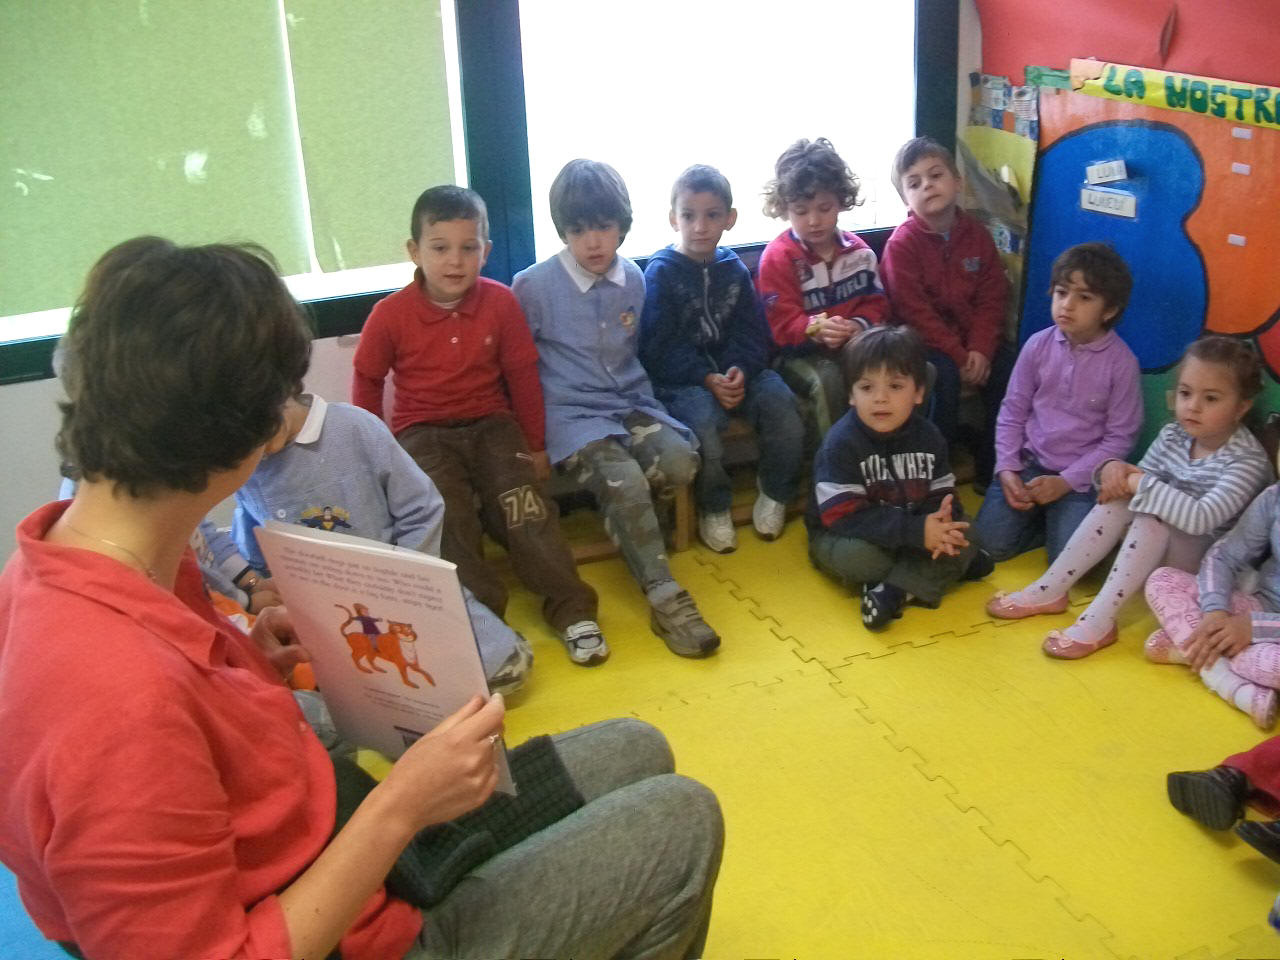 foto dell'insegnante che legge la storia  al gruppo di bambini